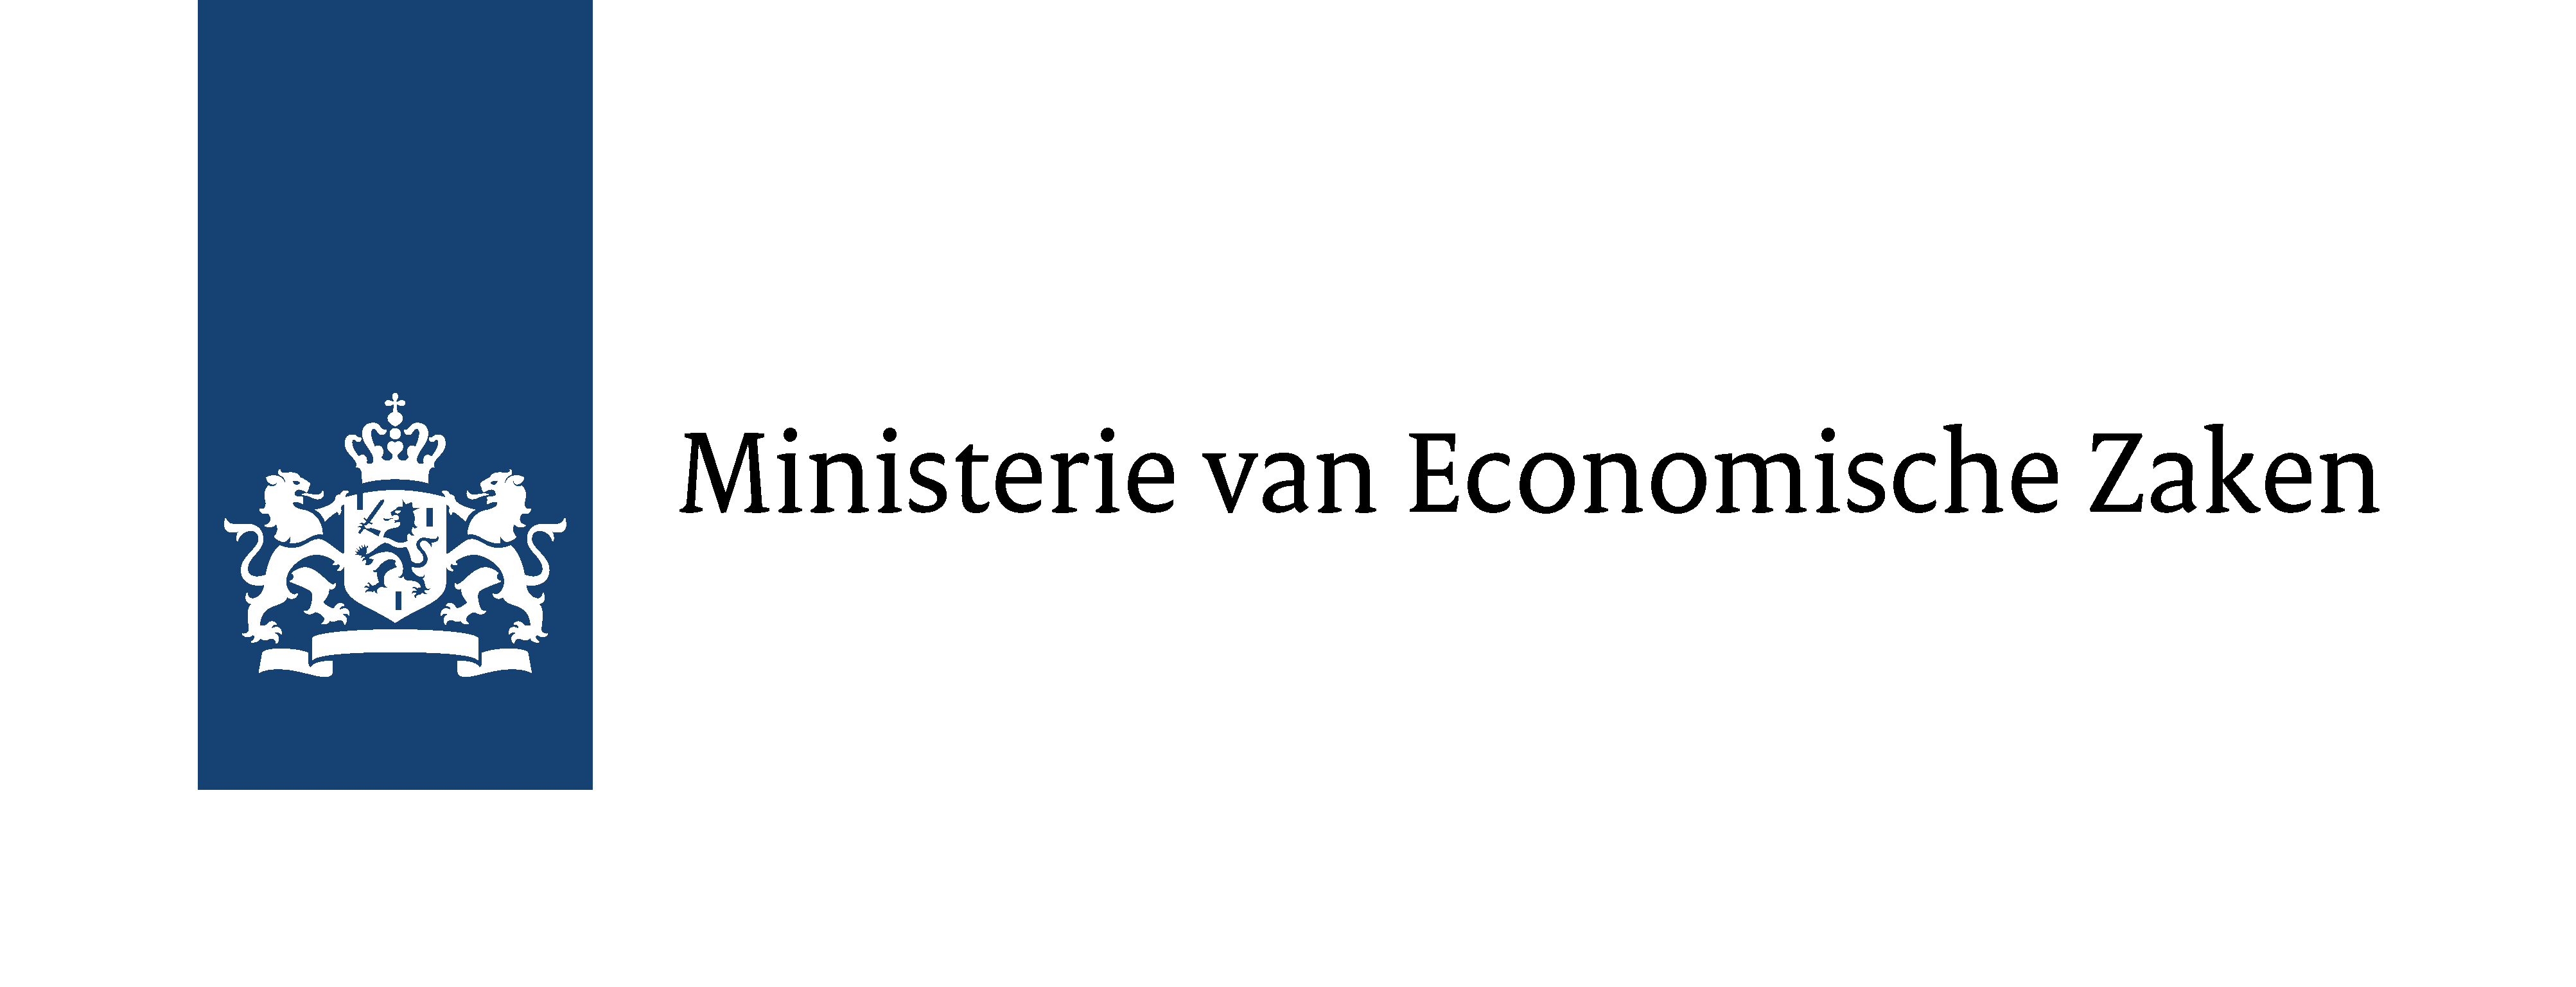 ministerie van economische zaken